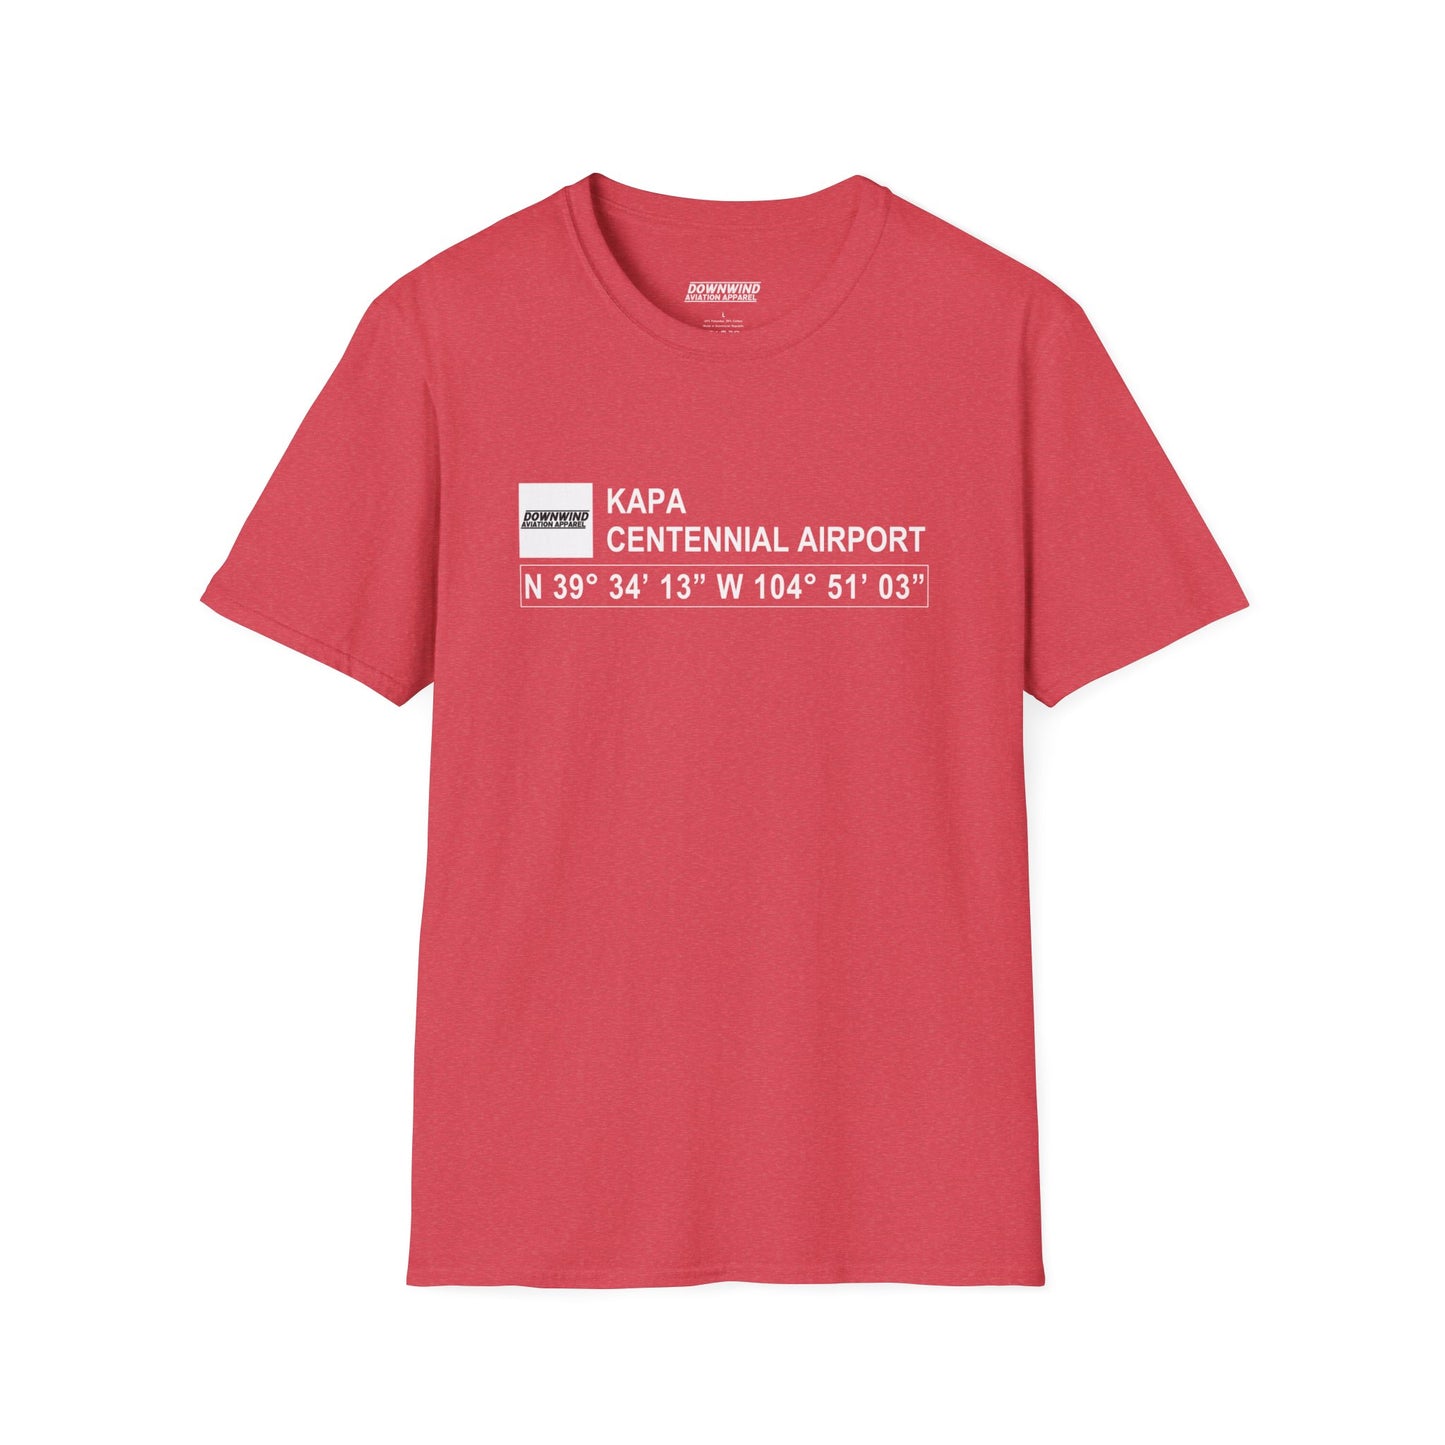 KAPA / Centennial Airport T-Shirt